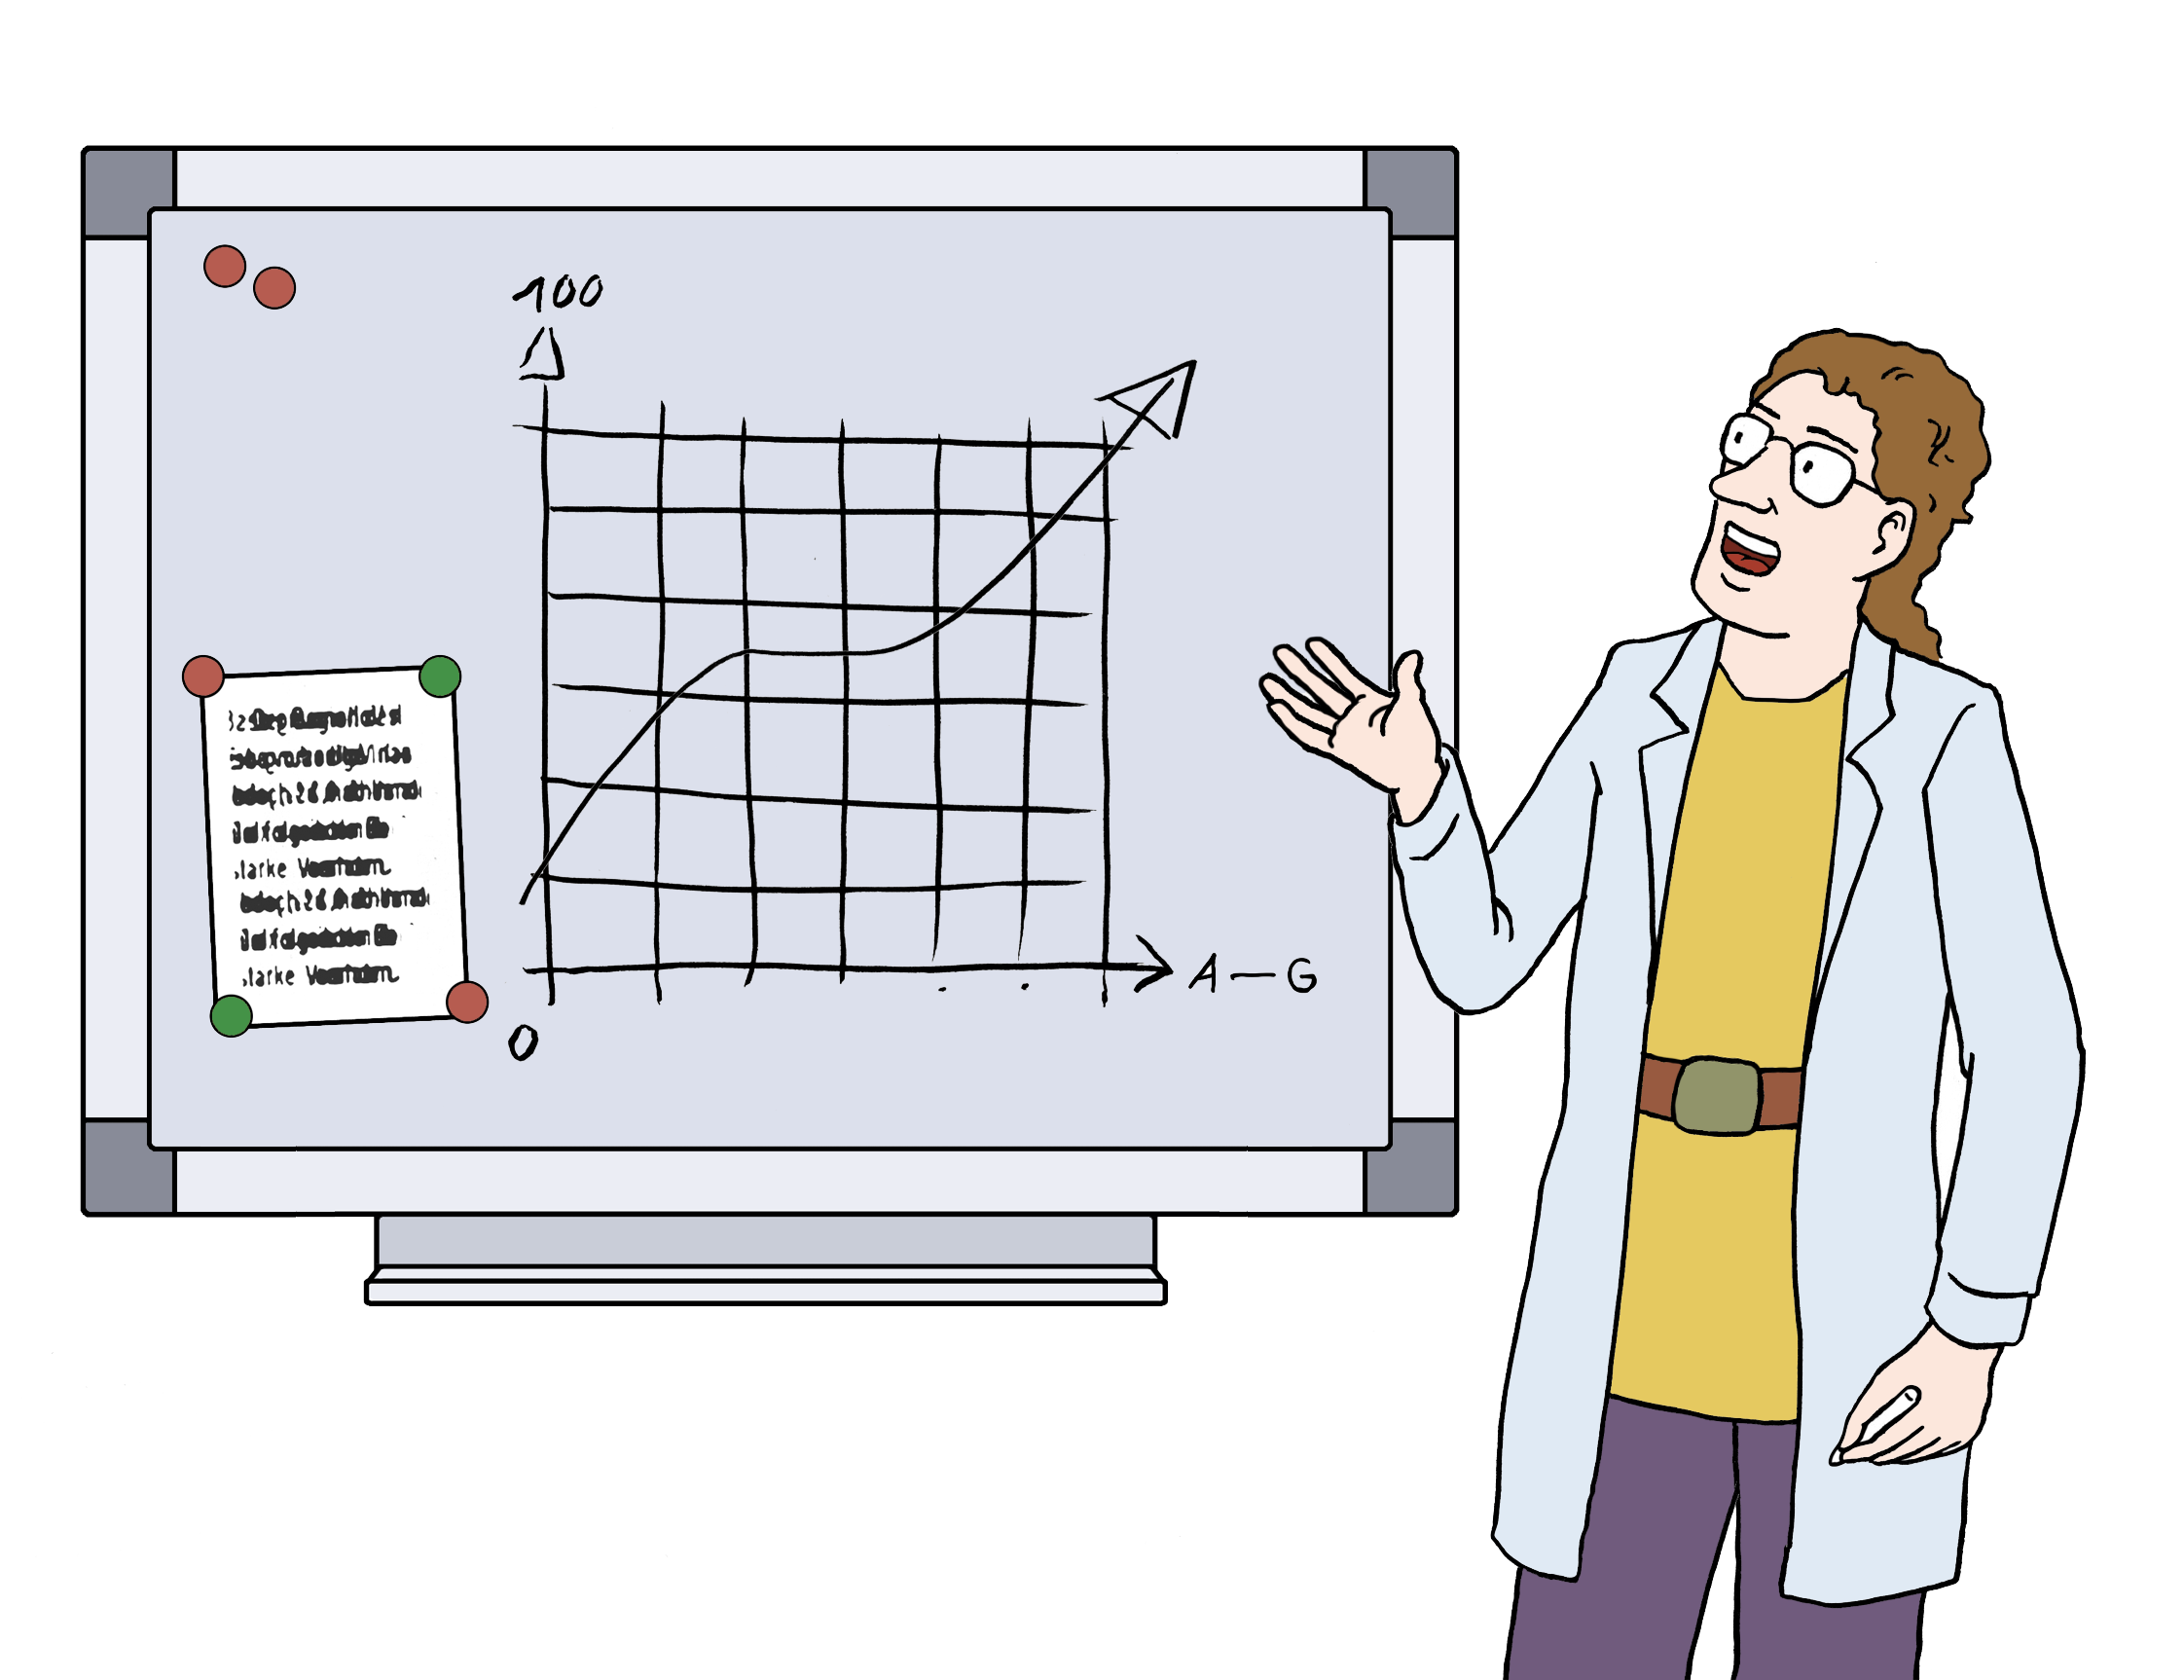 Ein Forscher steht vor einer Tafel. Auf der Tafel ist eine Grafik abgebildet. Der Forscher erklärt diese Grafik.